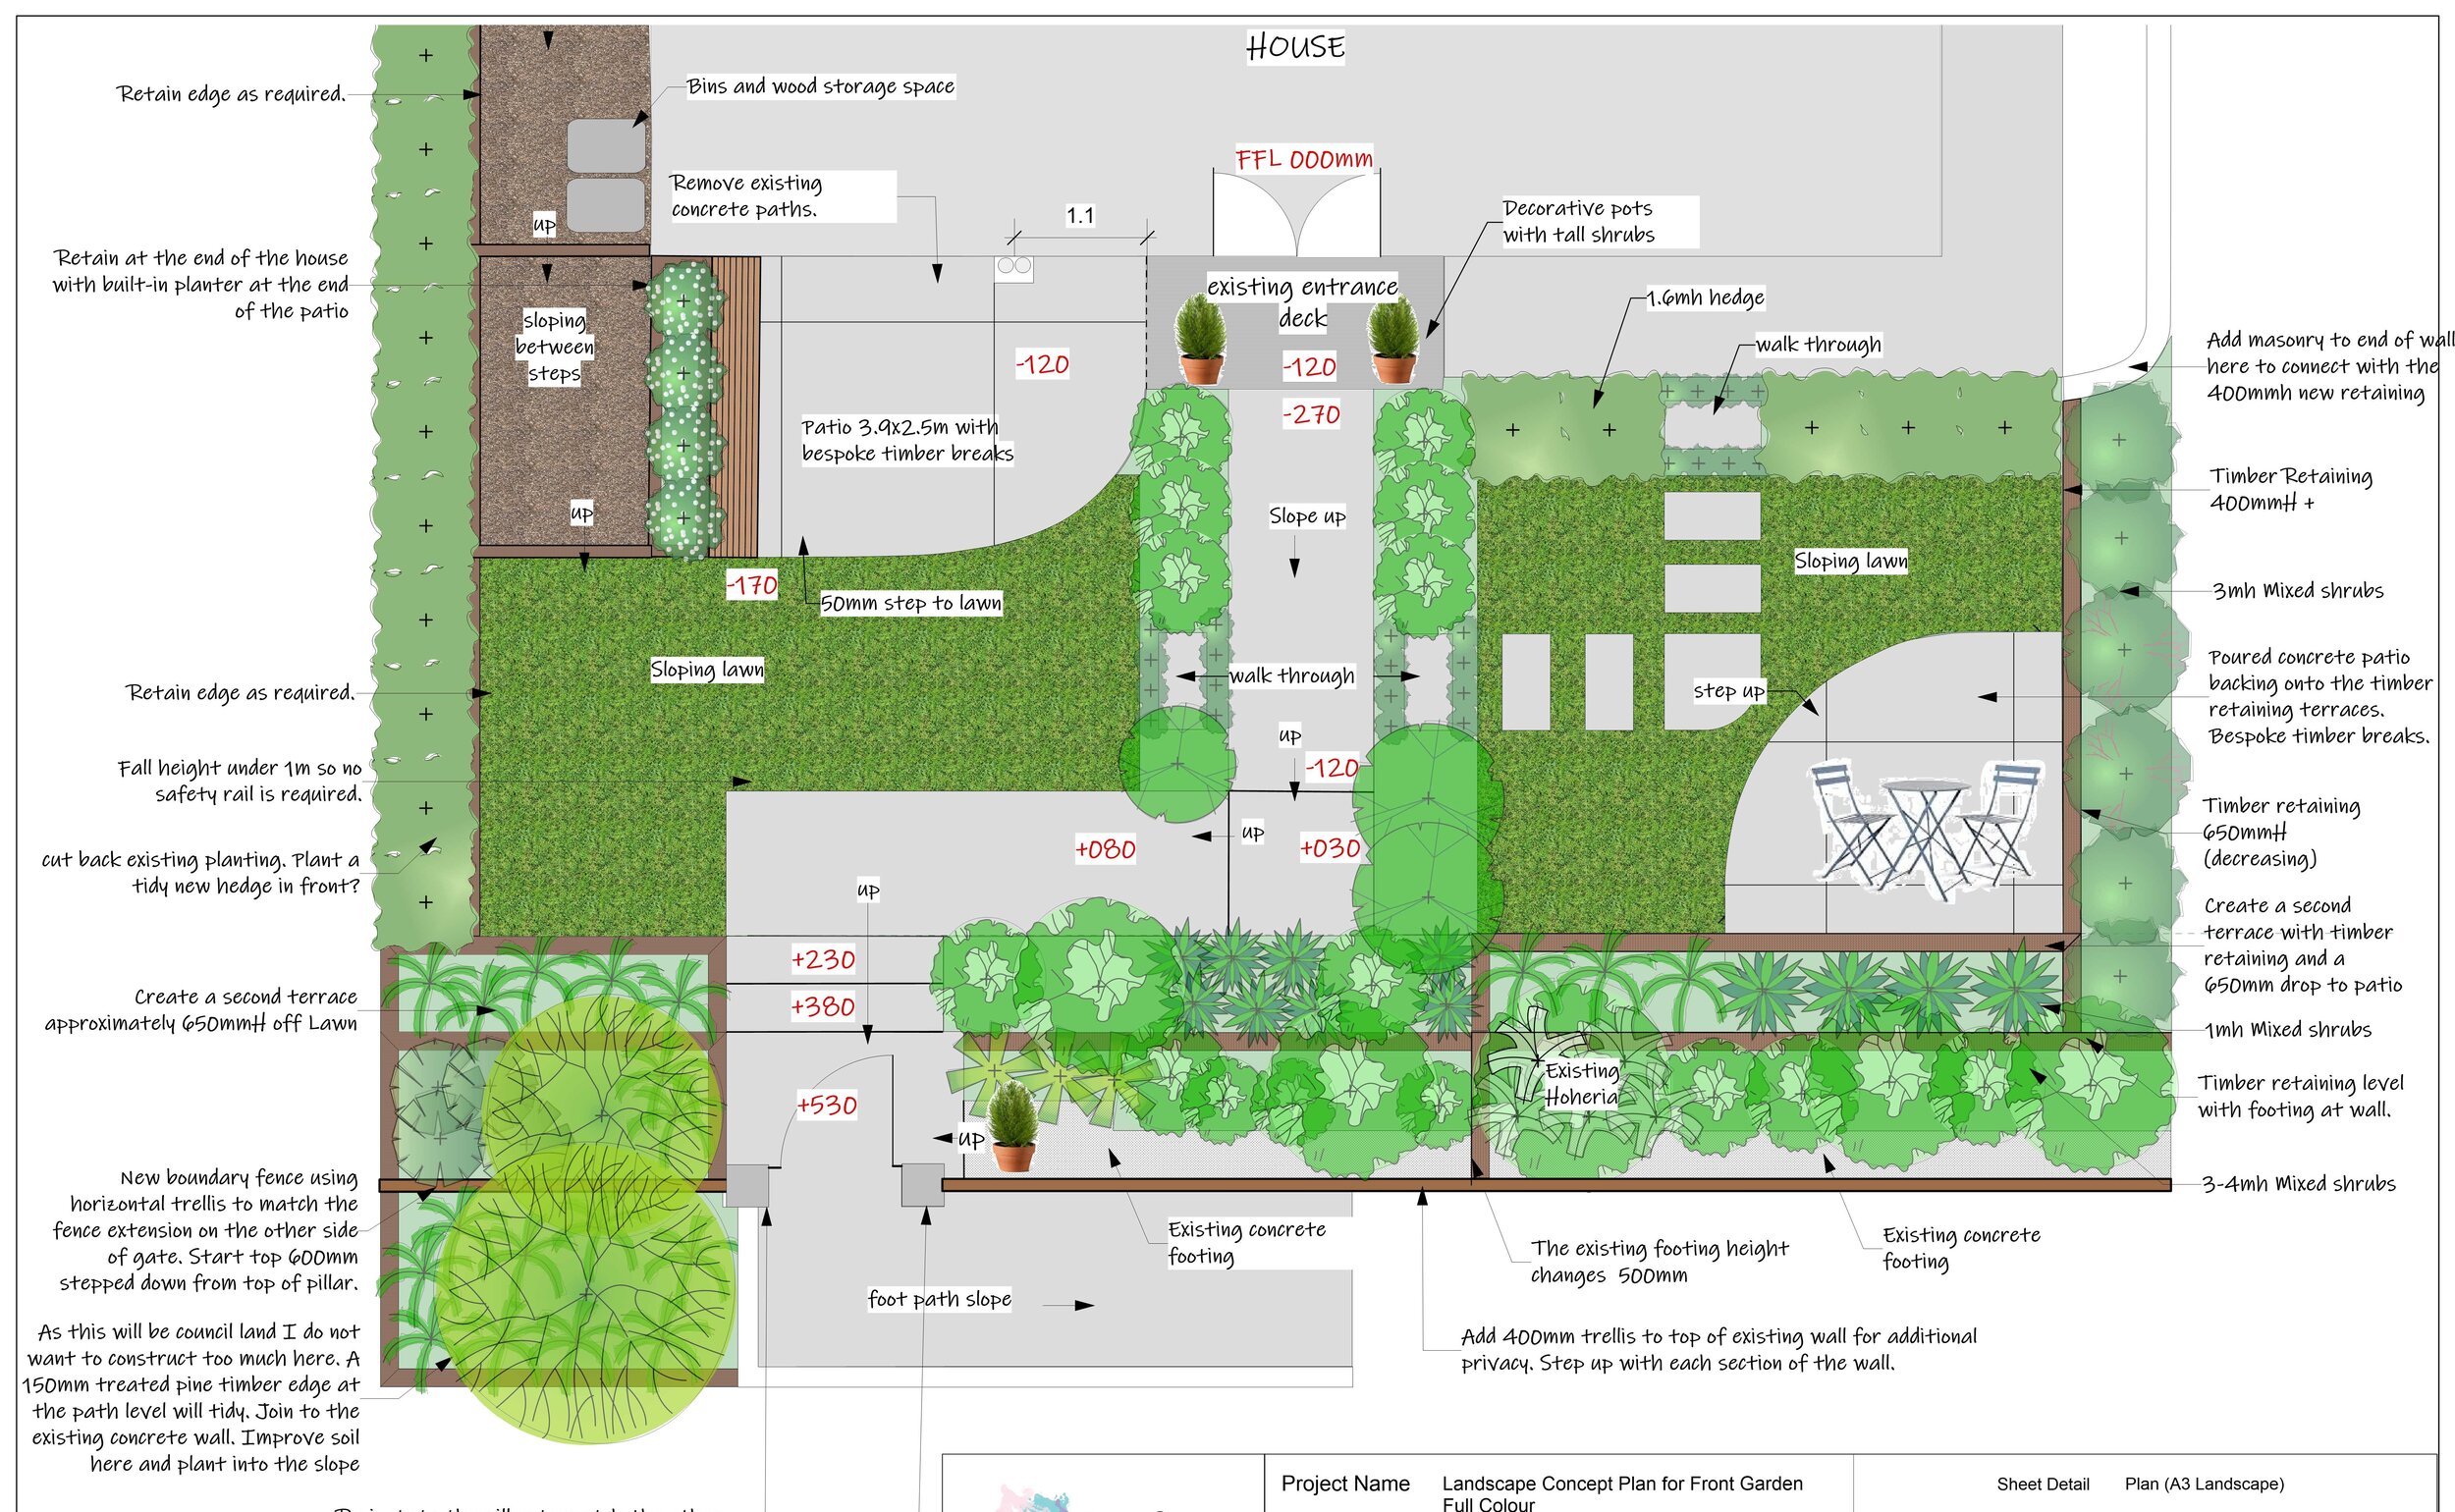 Plan example of front garden.jpg